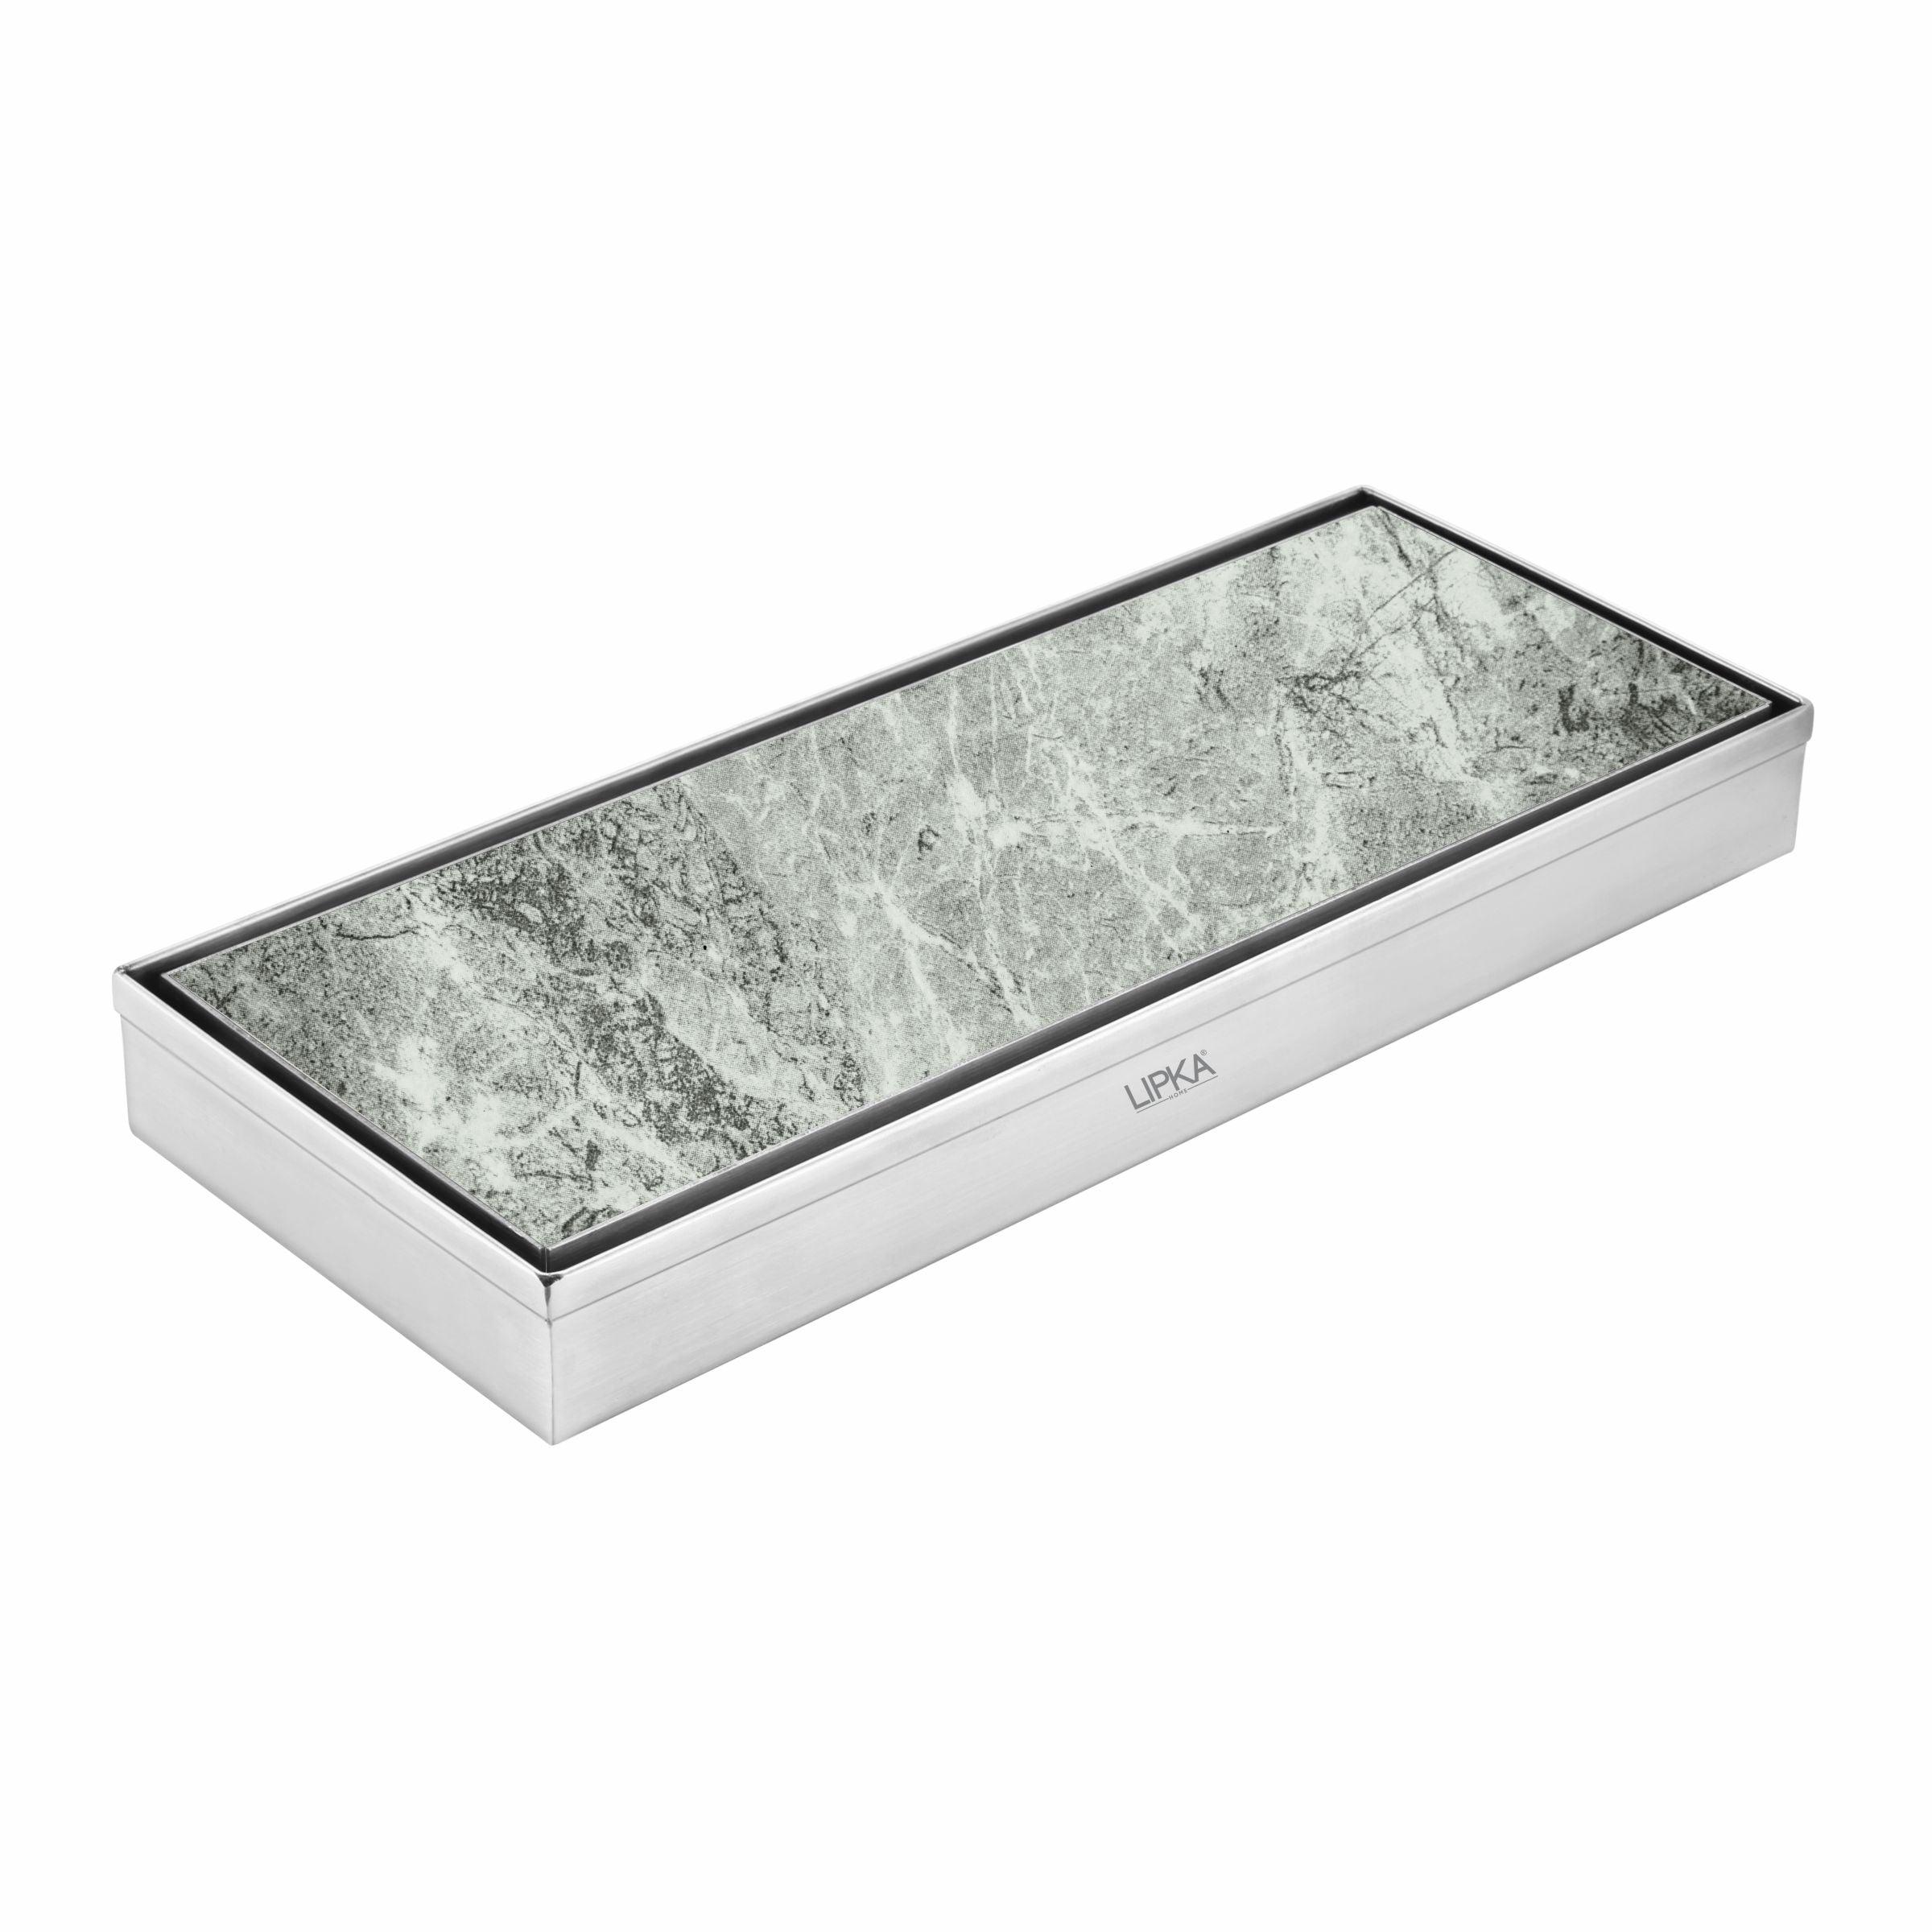 Tile Insert Shower Drain Channel (18 x 5 Inches) - LIPKA - Lipka Home